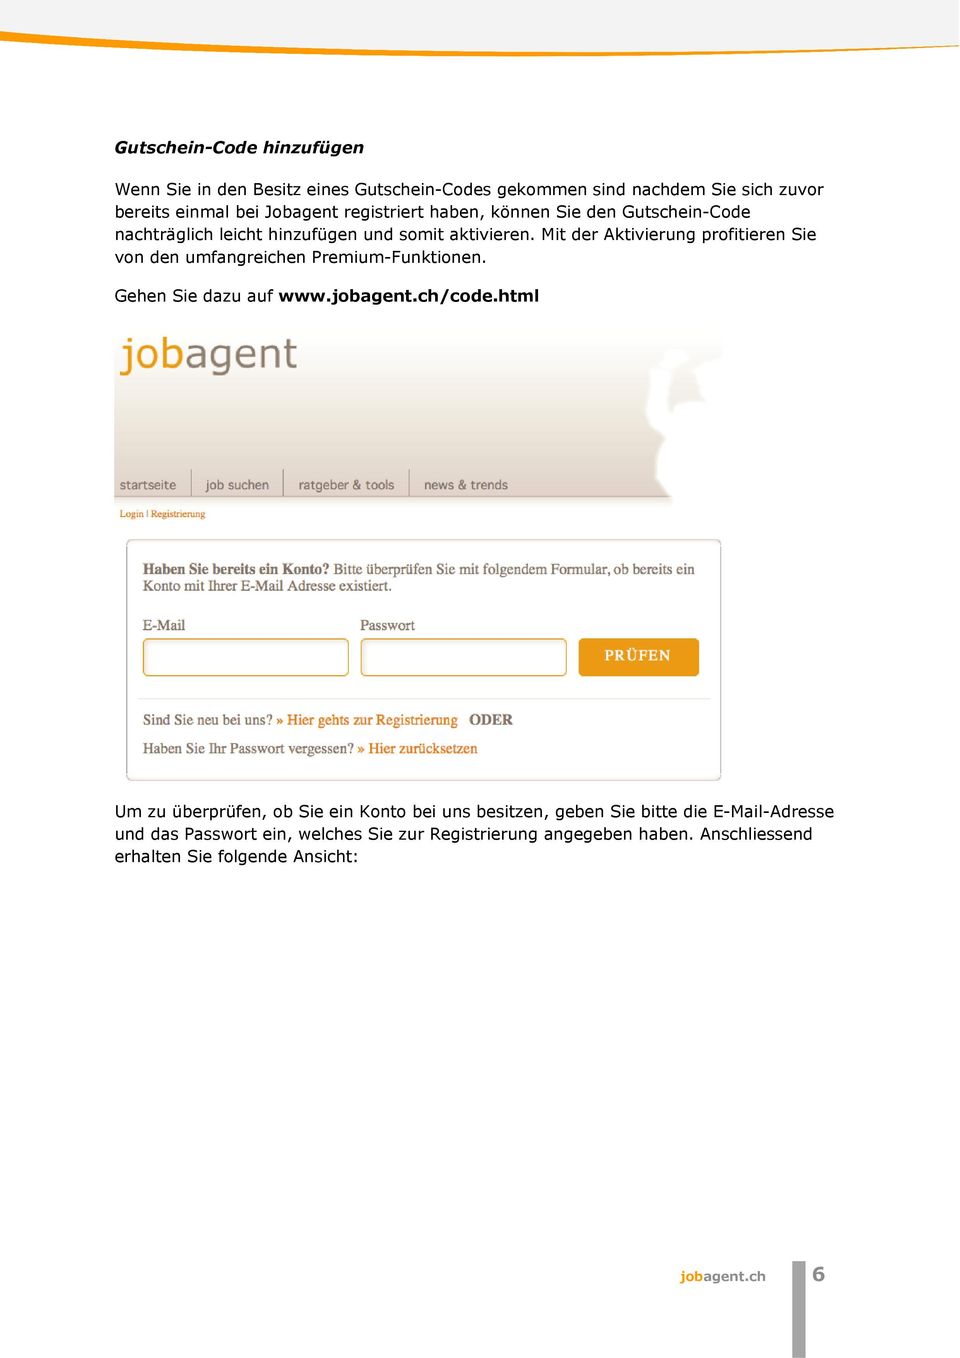 Mit der Aktivierung profitieren Sie von den umfangreichen Premium-Funktionen. Gehen Sie dazu auf www.jobagent.ch/code.